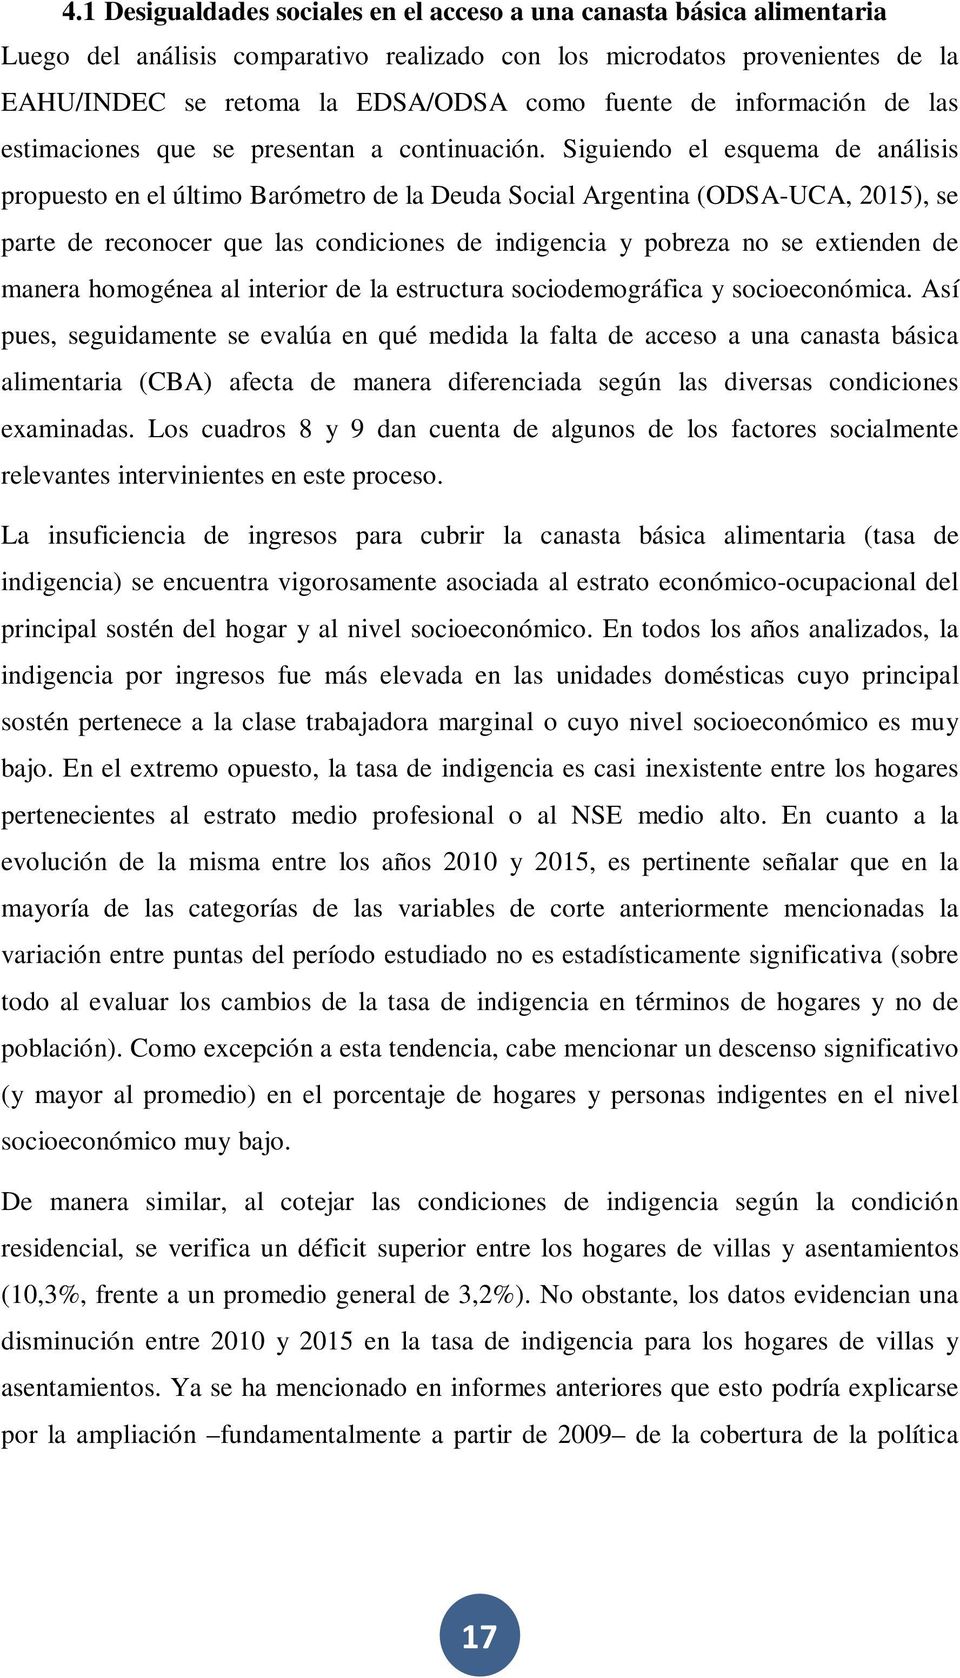 Siguiendo el esquema de análisis propuesto en el último Barómetro de la Deuda Social Argentina (ODSA-UCA, 2015), se parte de reconocer que las condiciones de indigencia y pobreza no se extienden de